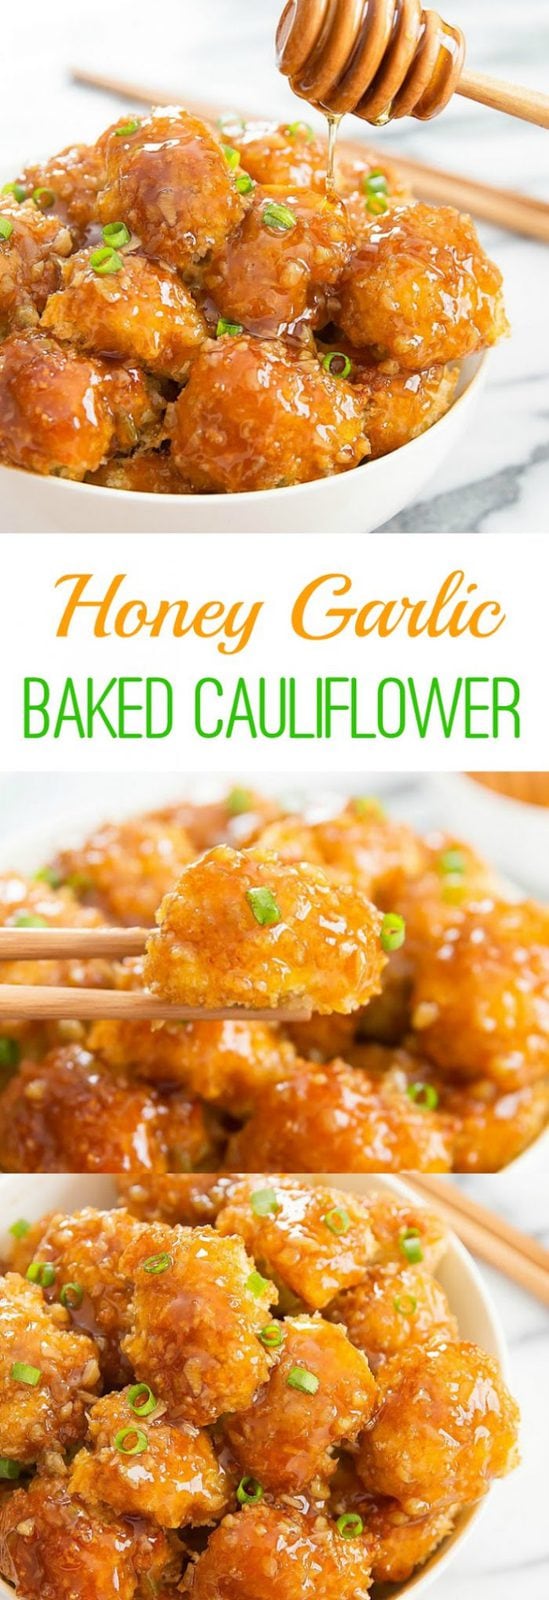 Honey Garlic Baked Cauliflower